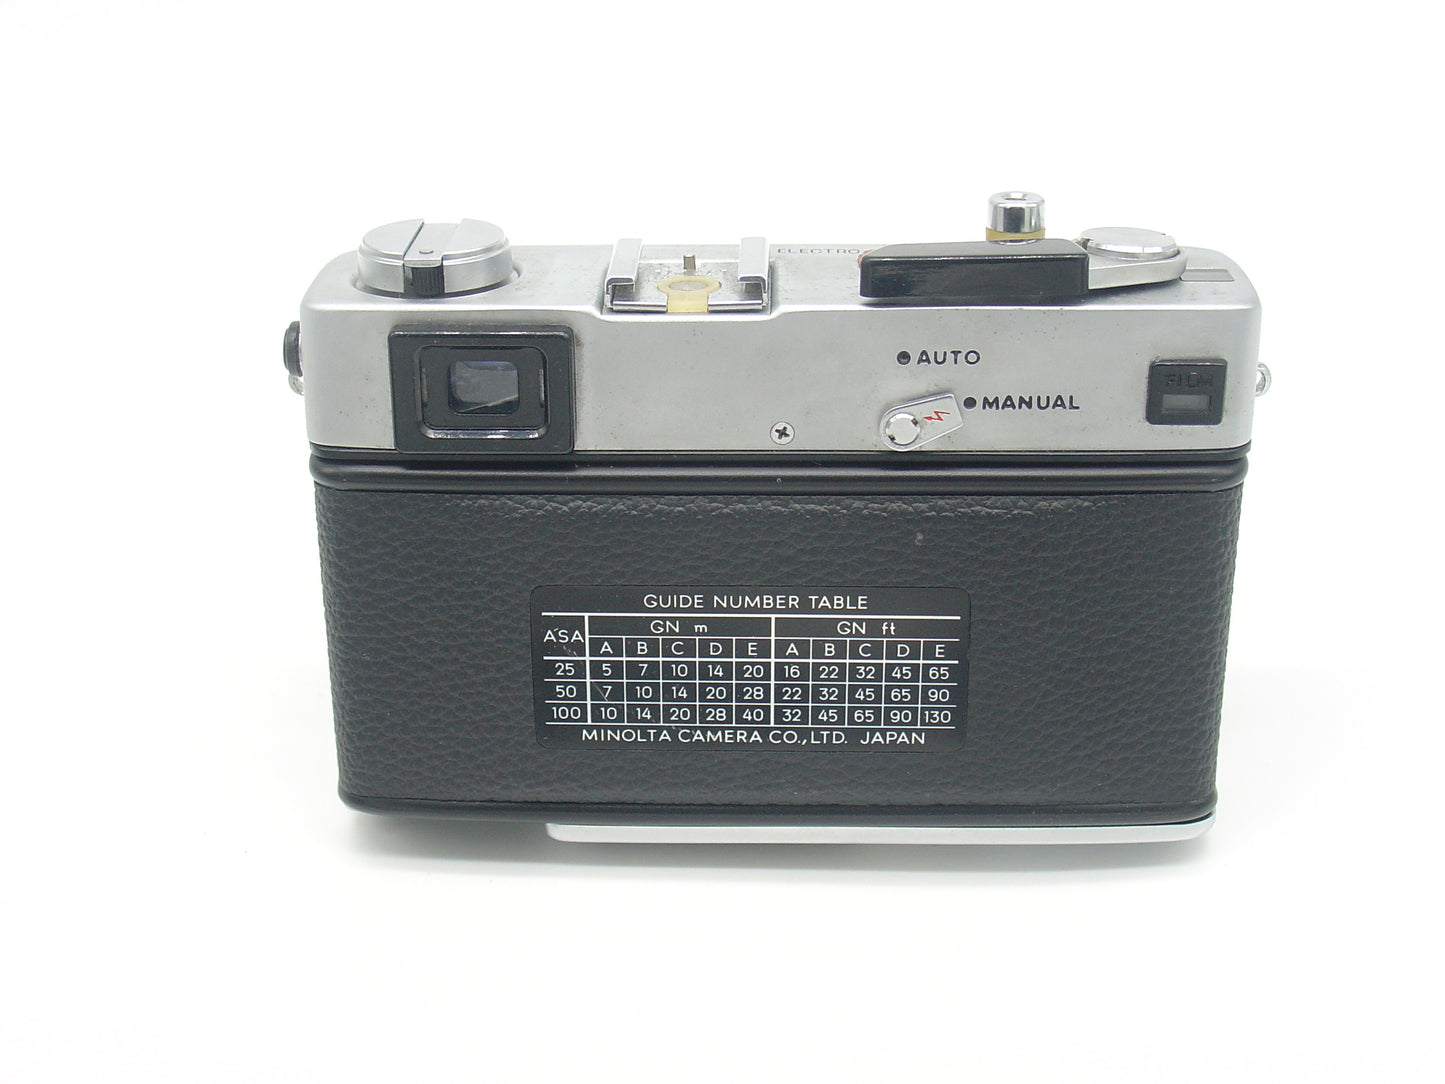 Minolta HiMatic E rangefinder camera